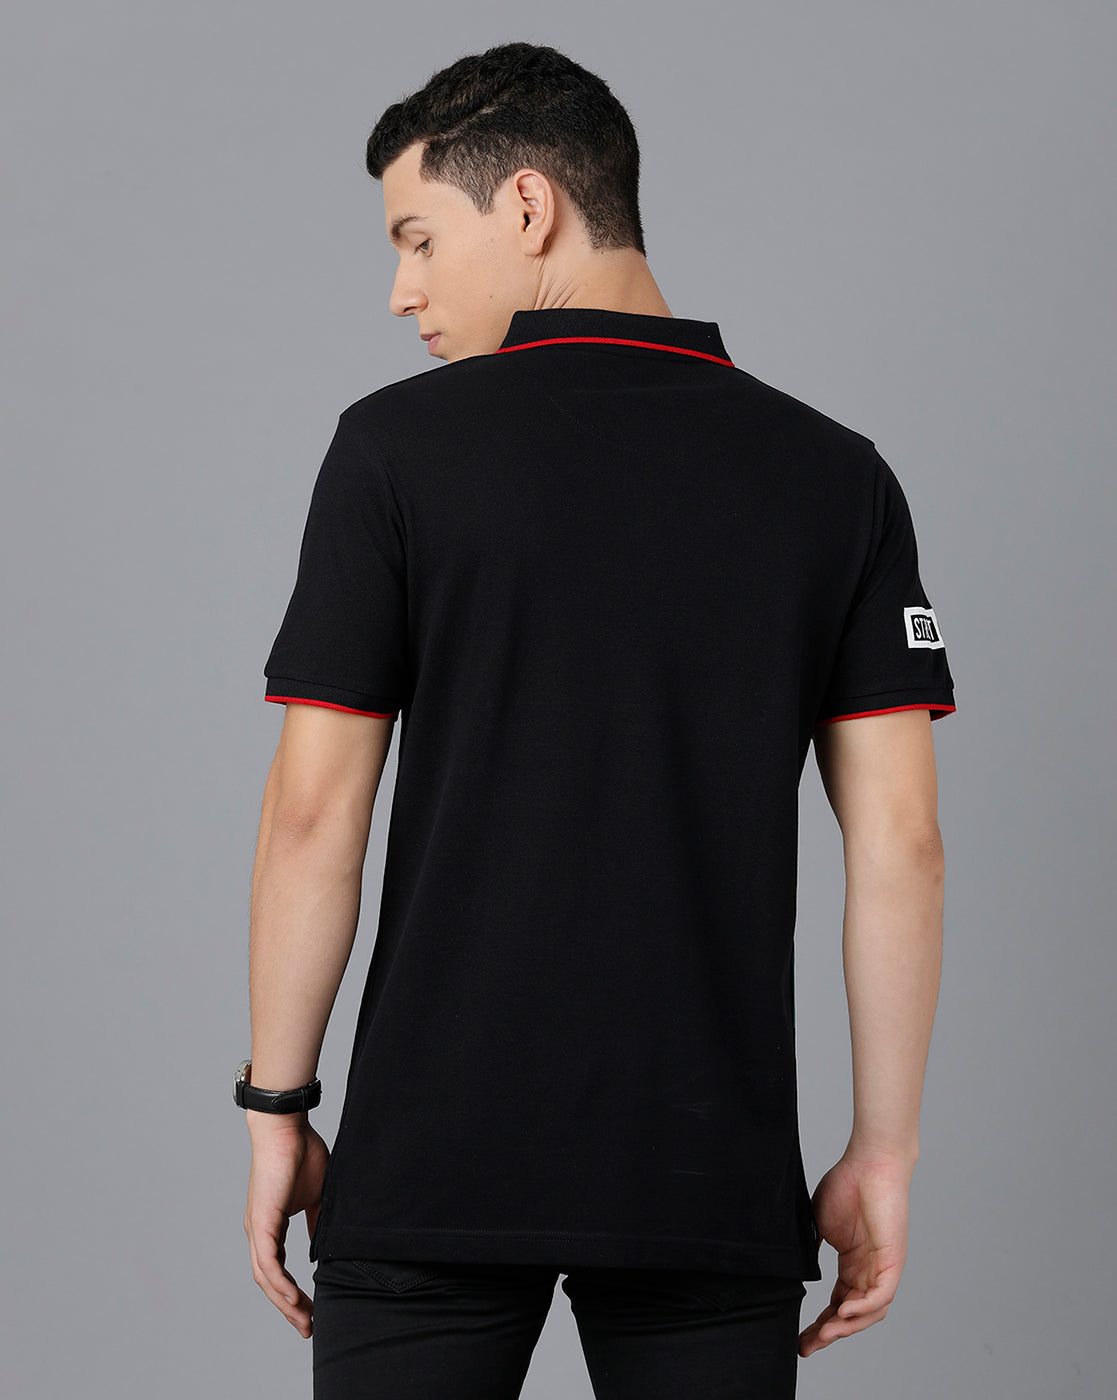 CP BRO Men's Cotton Half Sleeve Printed Slim Fit Black Color Polo Neck T-Shirt | HS-BRP - 01 A